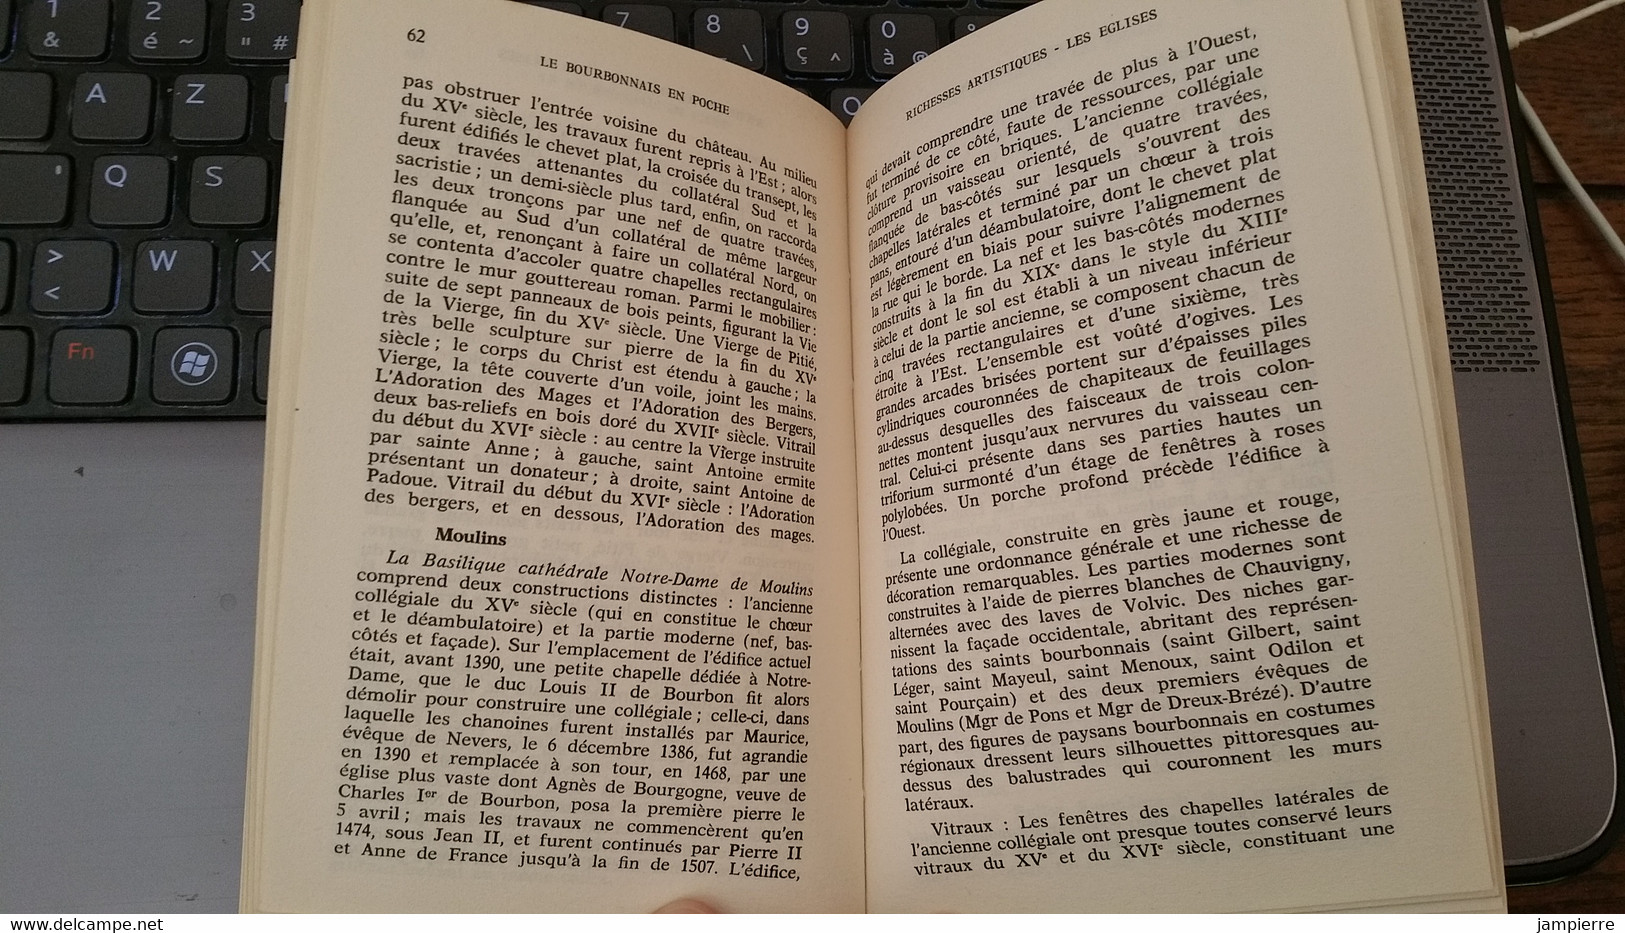 Le Bourbonnais En Poche , Marcel Génermont - 1971, 108 Pages / Tiré à 300 Exemplaires - Bourbonnais